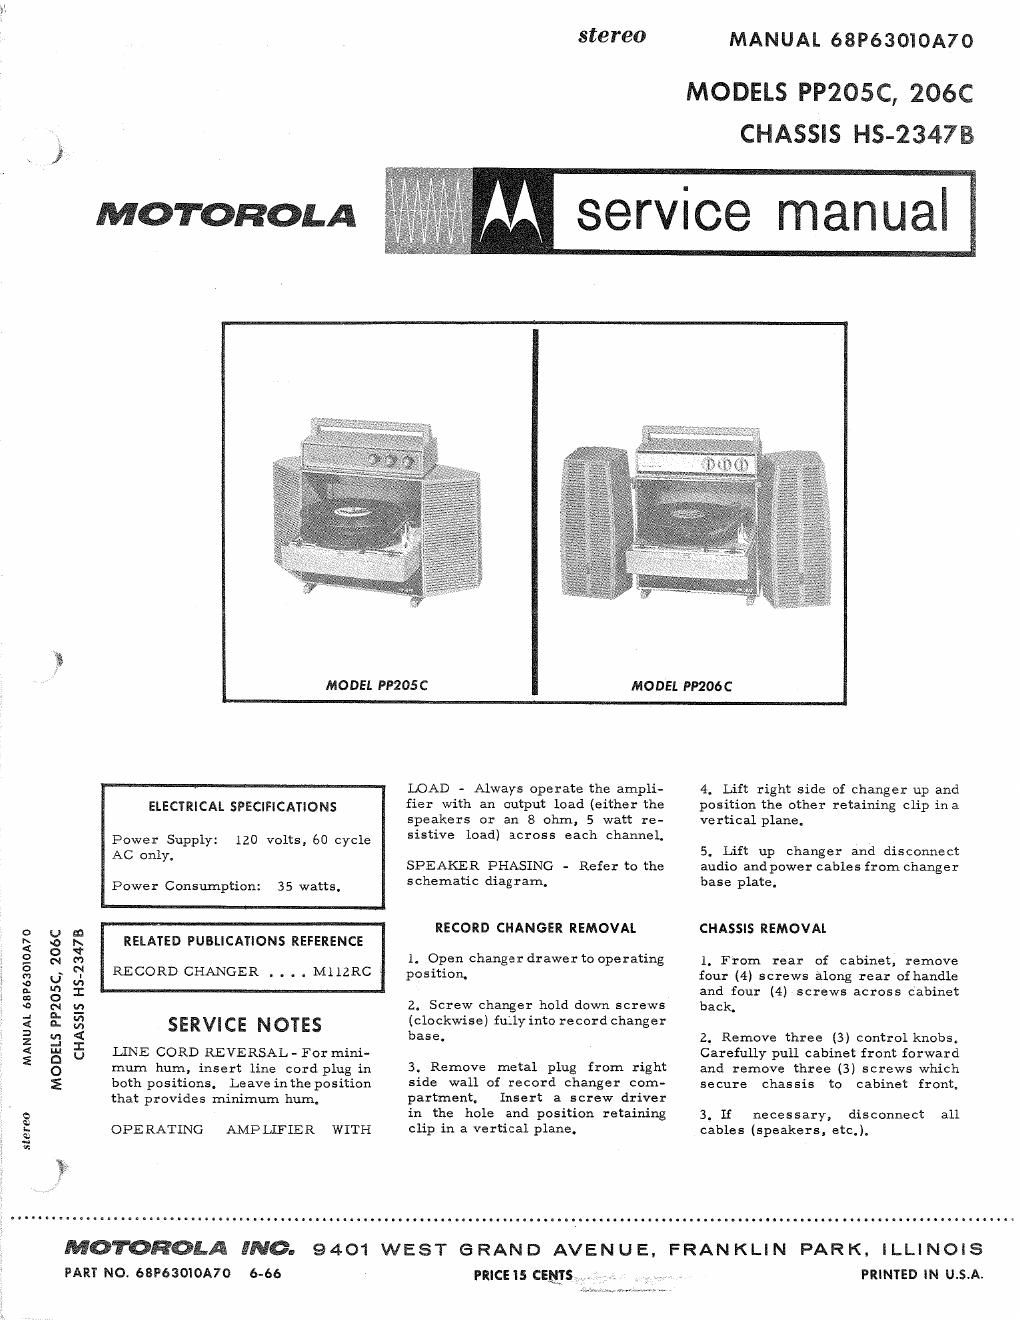 motorola pp 205 c service manual